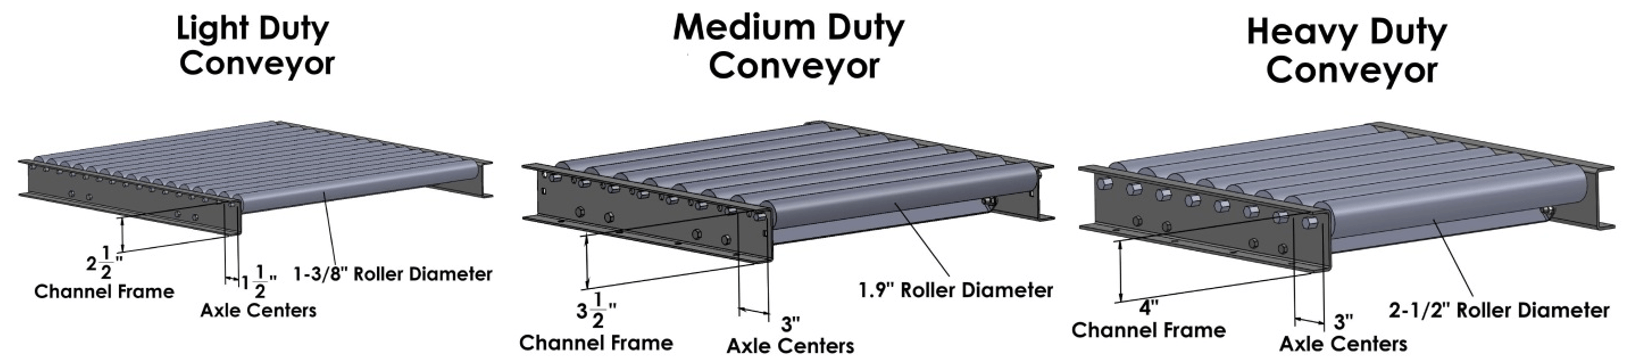 Ashland Conveyor Duty Conveyor